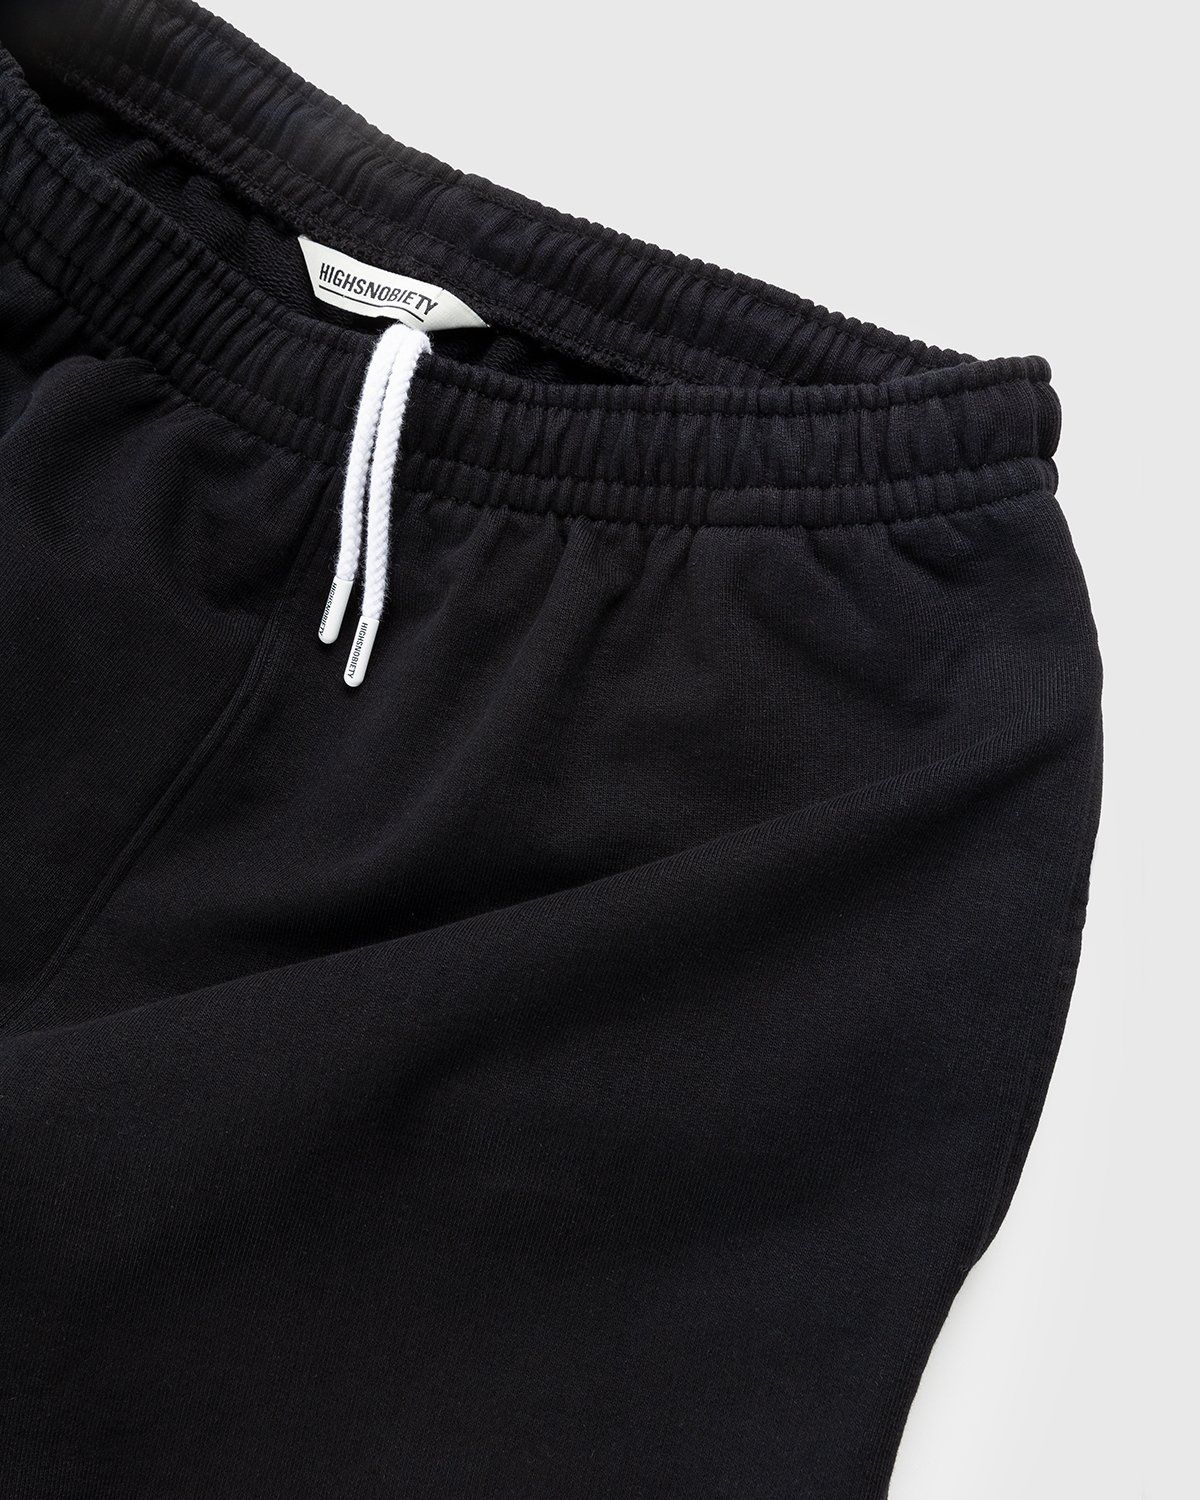 Highsnobiety – Staples Shorts Black - Image 5